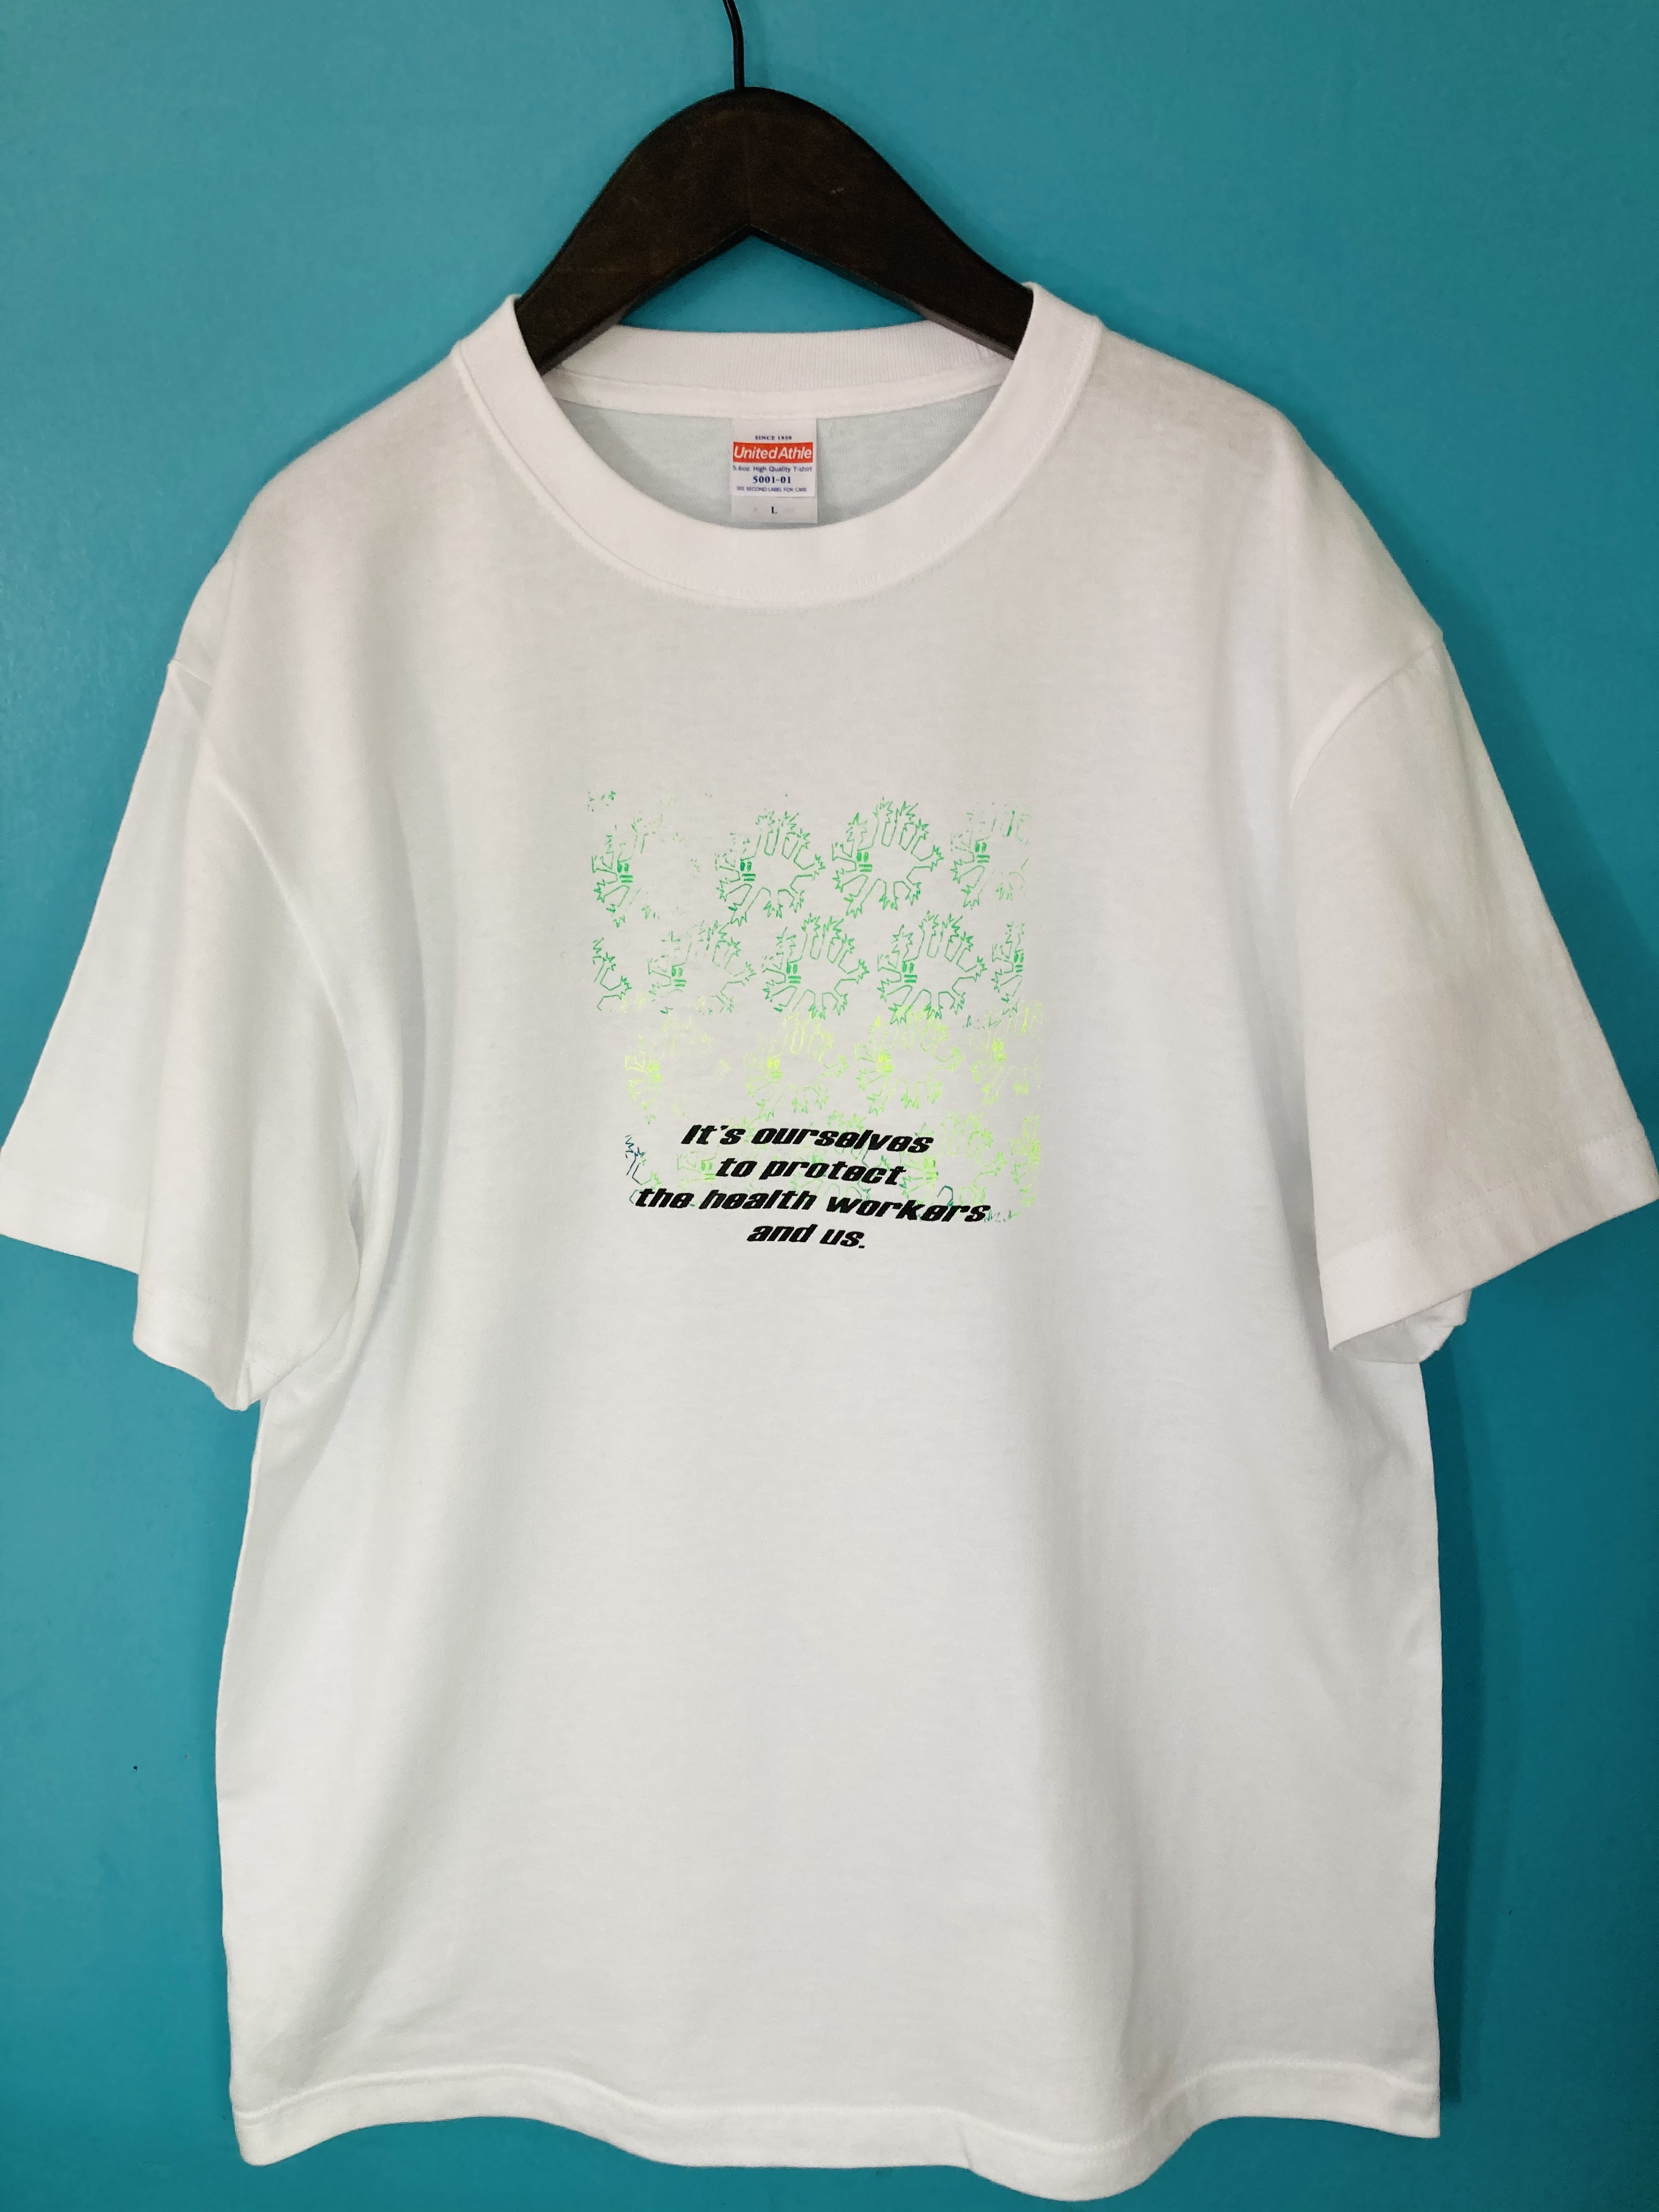 【GUERRILLAKID】ゲリラキッド Tシャツ 2枚セット